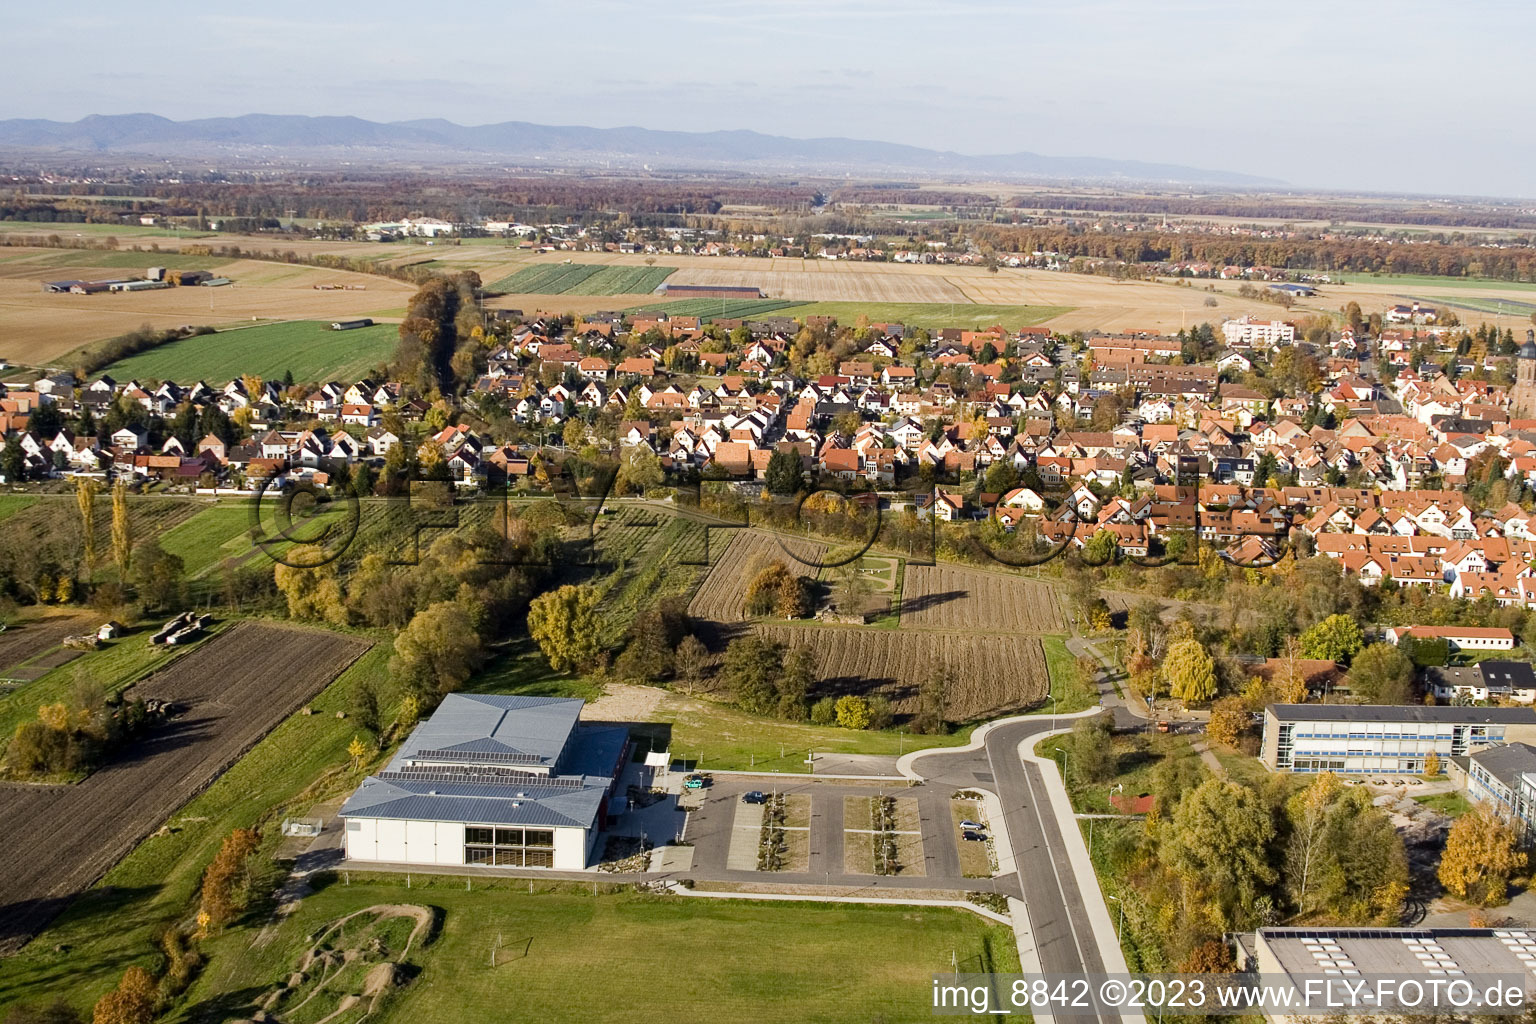 Bienwaldhalle à Kandel dans le département Rhénanie-Palatinat, Allemagne vue d'en haut